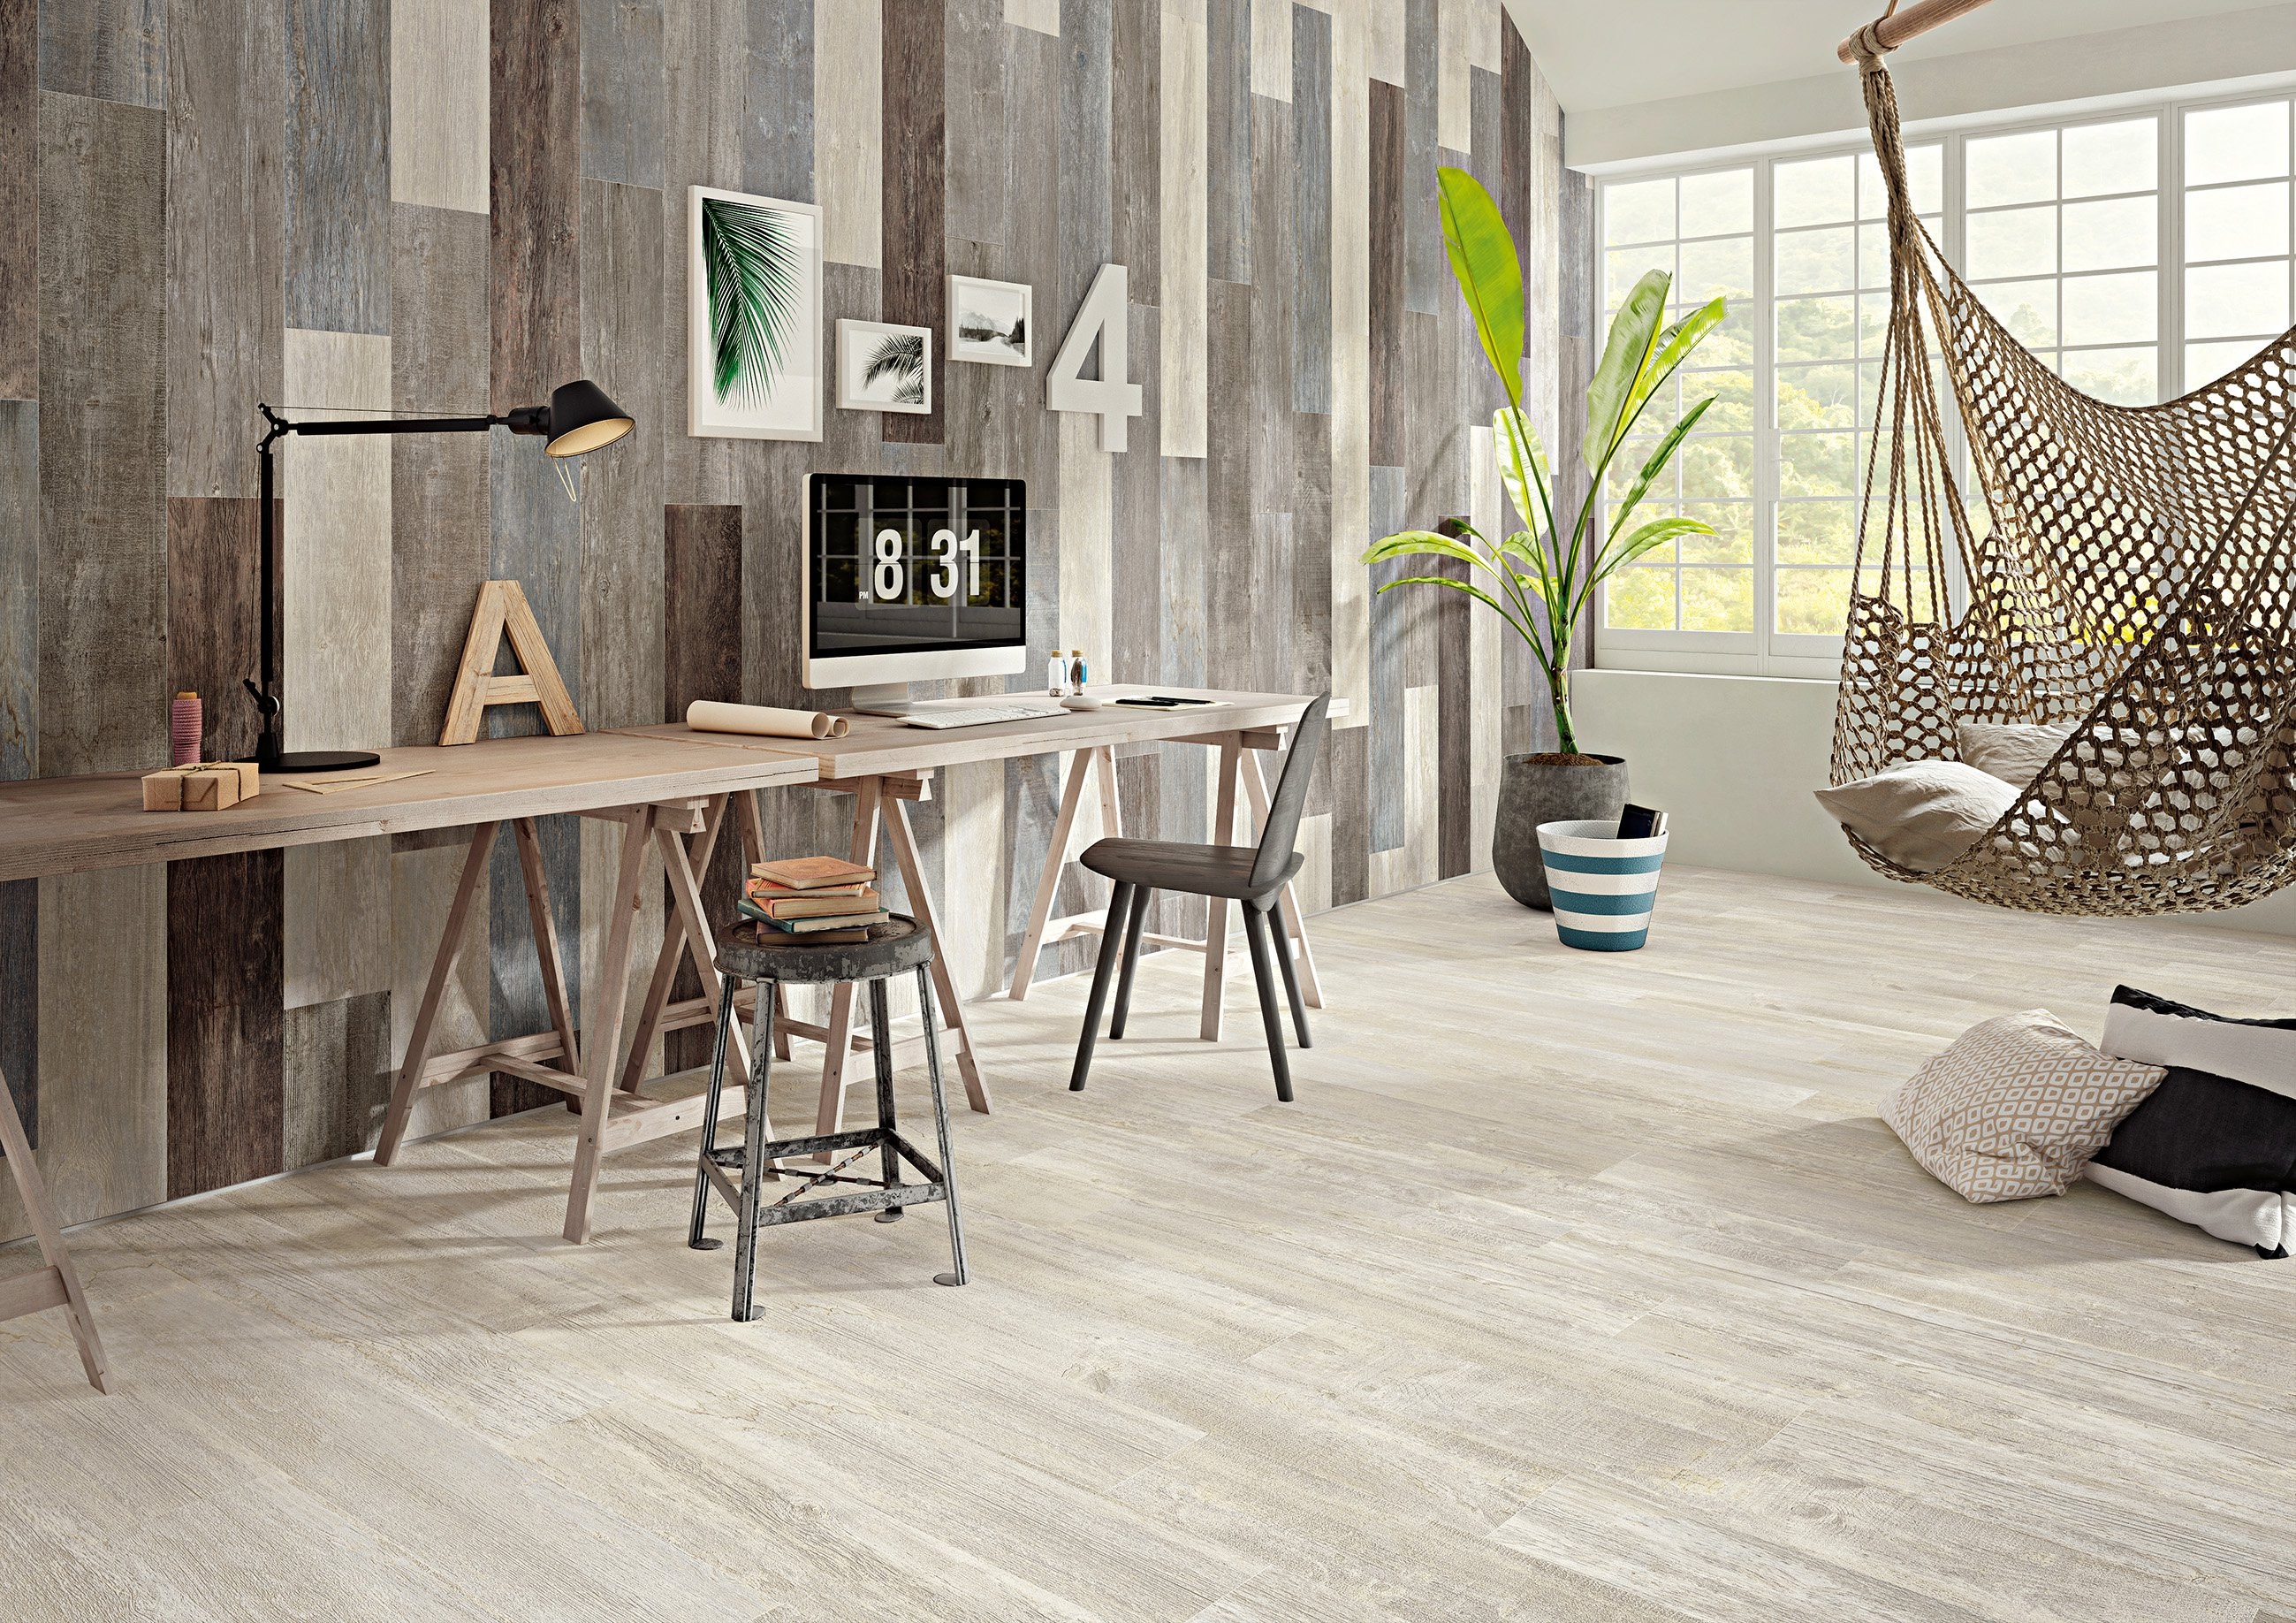 25 Great Hardwood Floor Trends 2018 2024 free download hardwood floor trends 2018 of 2018 hottest tile trends expert tips intended for cabane fog